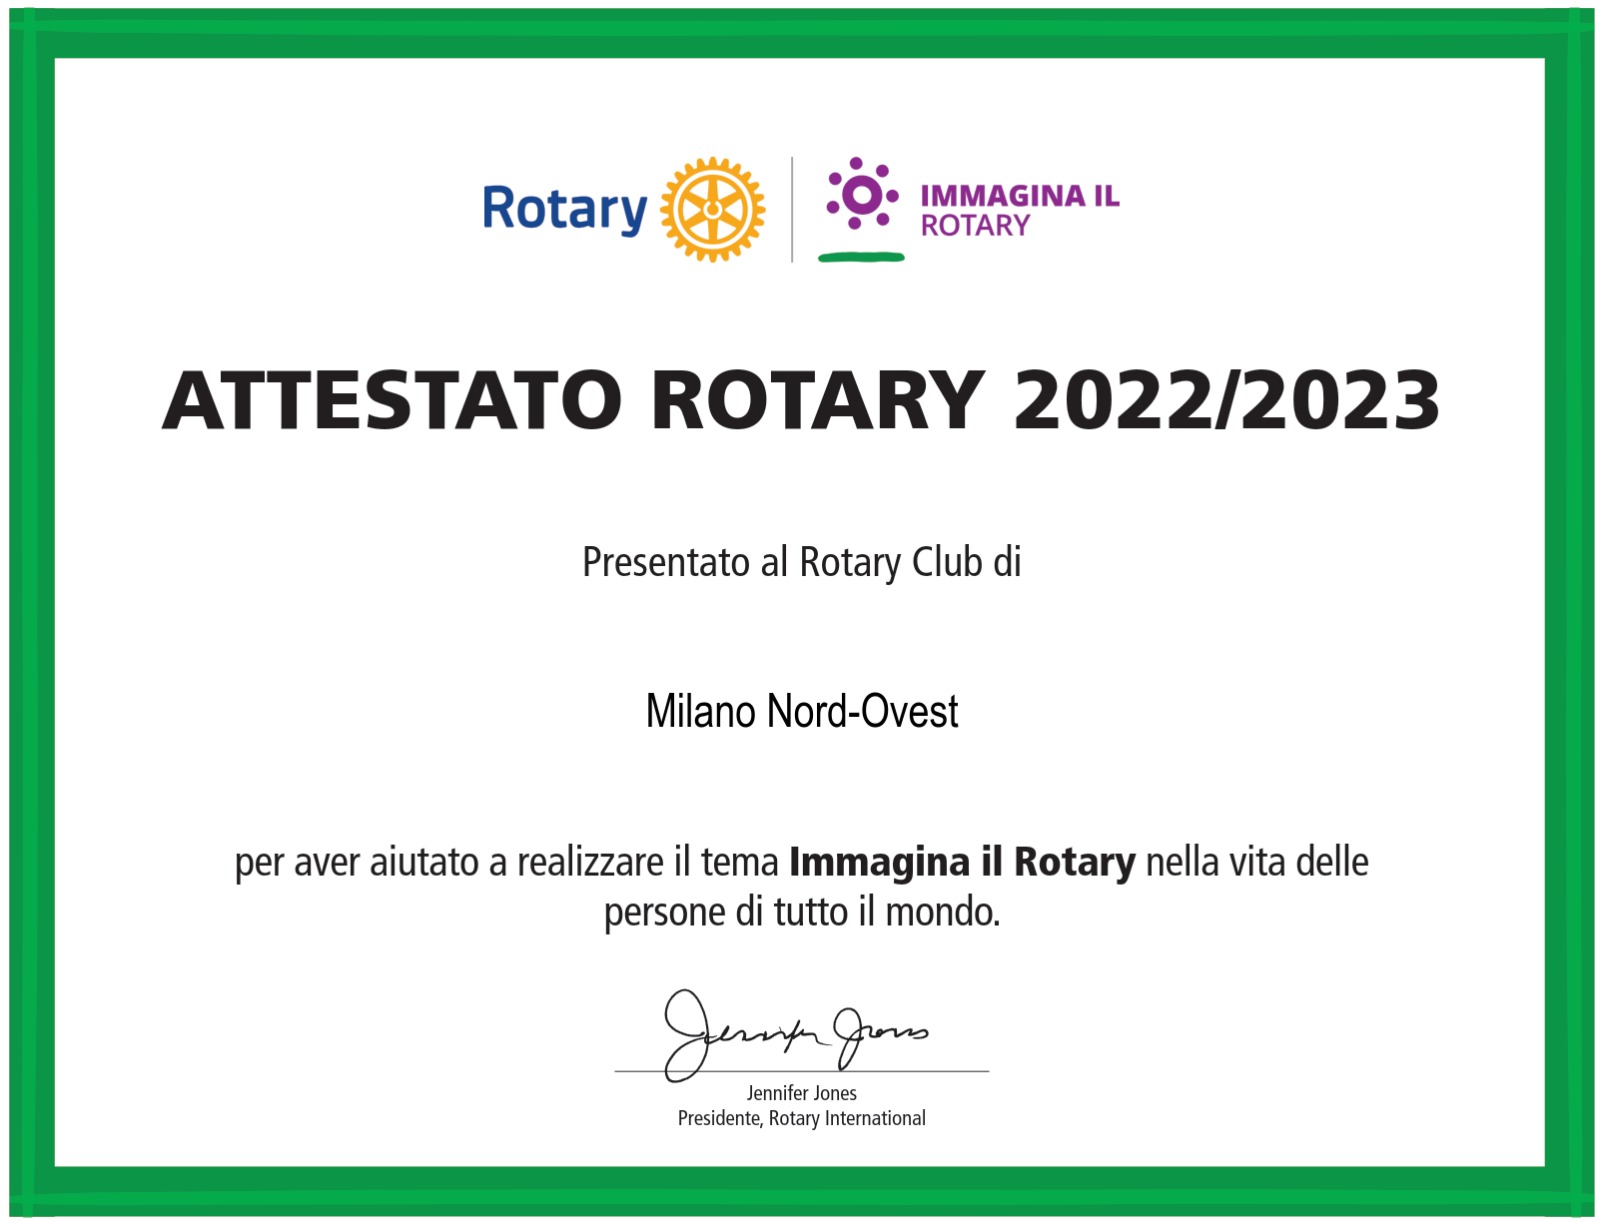 Attestato Rotary 22-23